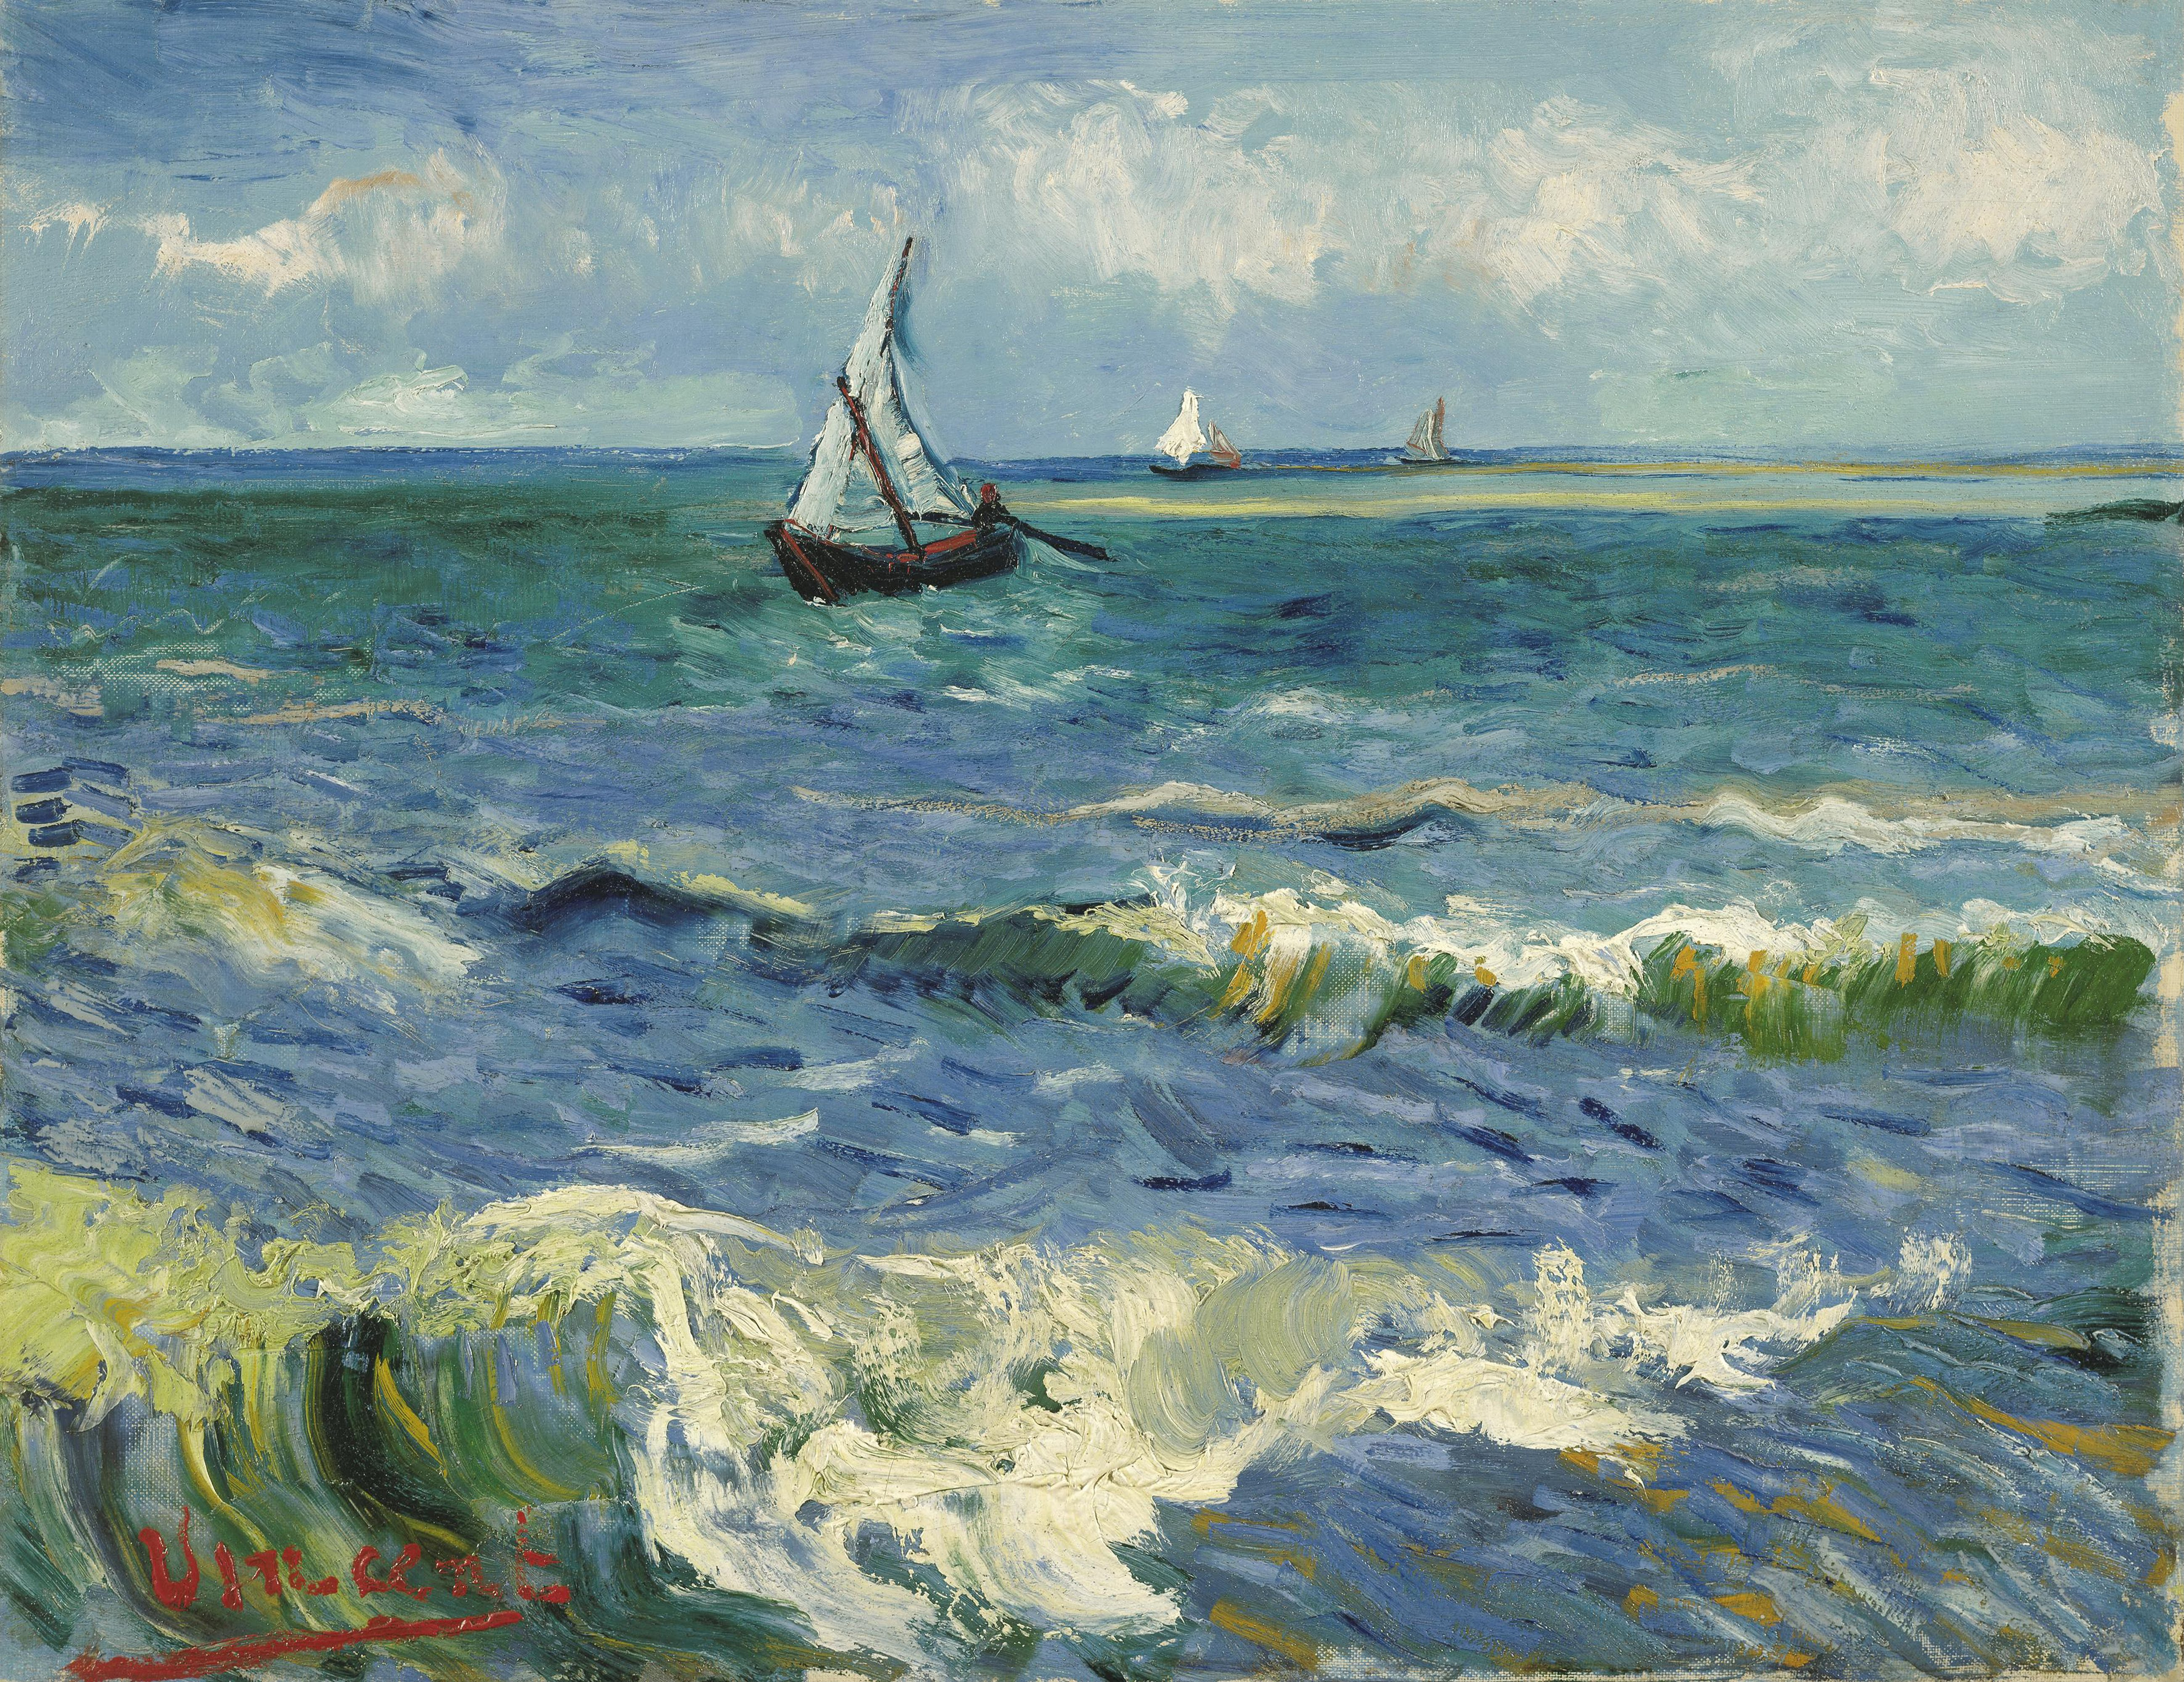 聖馬迪拉莫海景 by Vincent van Gogh - 1888 - 50.5 x 64.3 厘米 